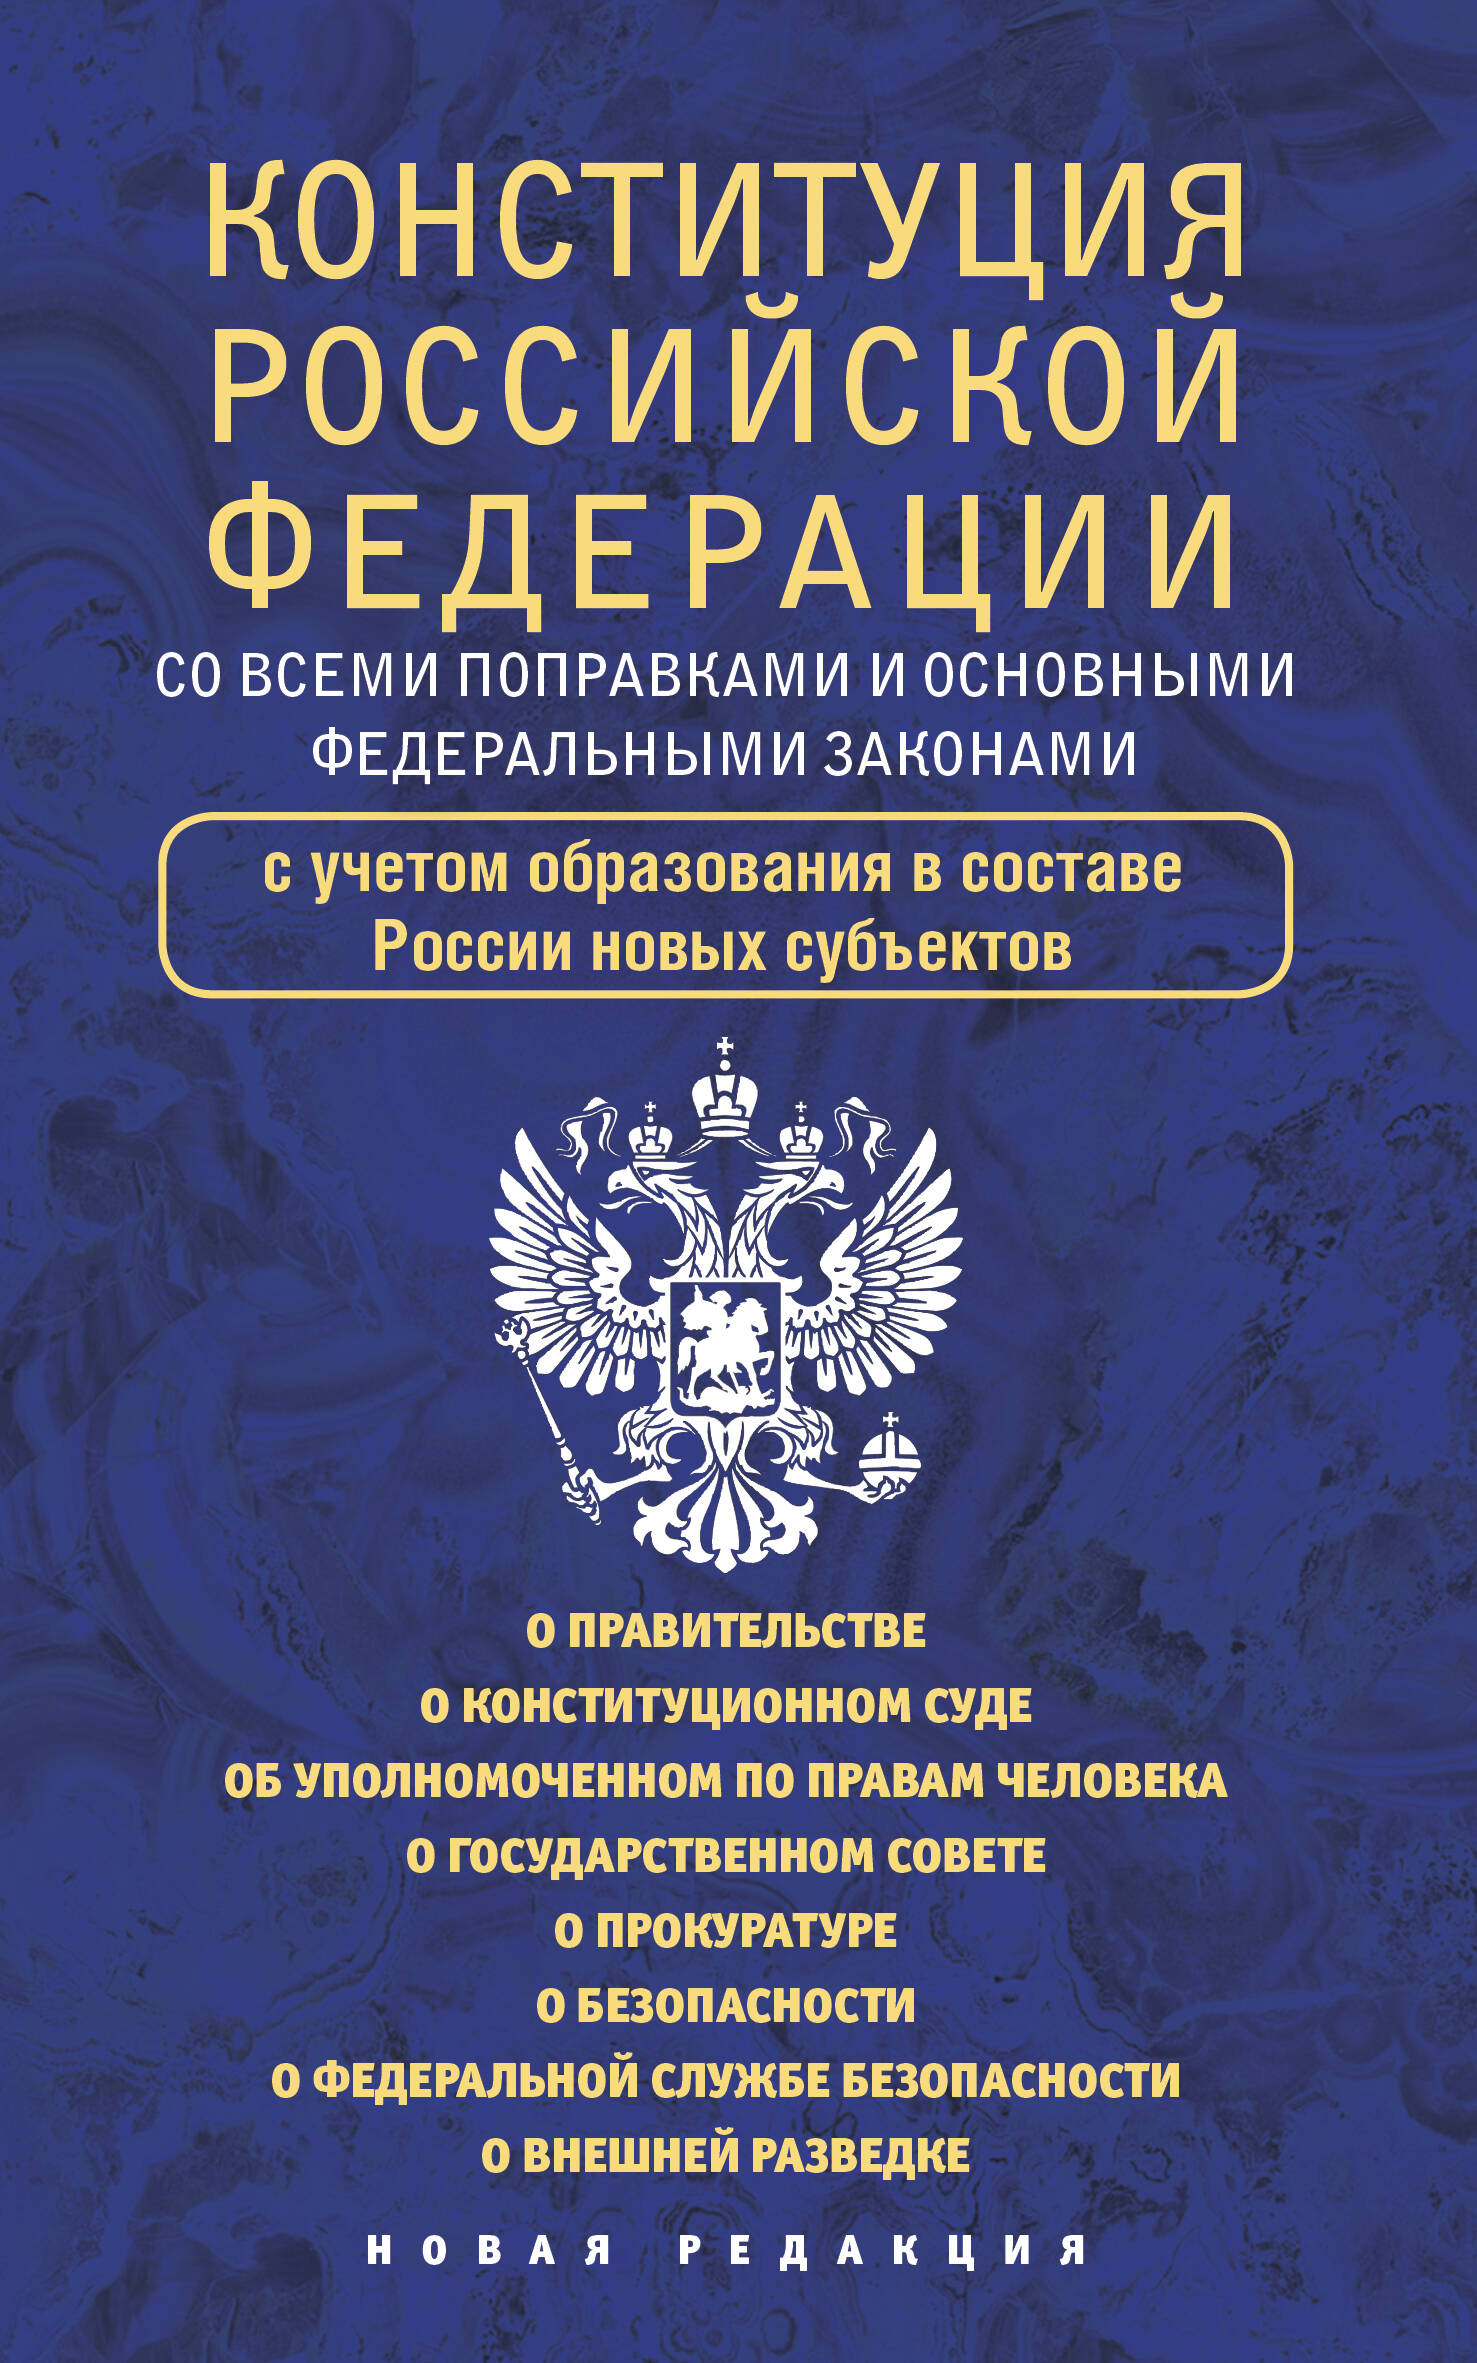 Конституция Российской Федерации со всеми поправками и основными федеральными законами фз о федеральной службе безопасности